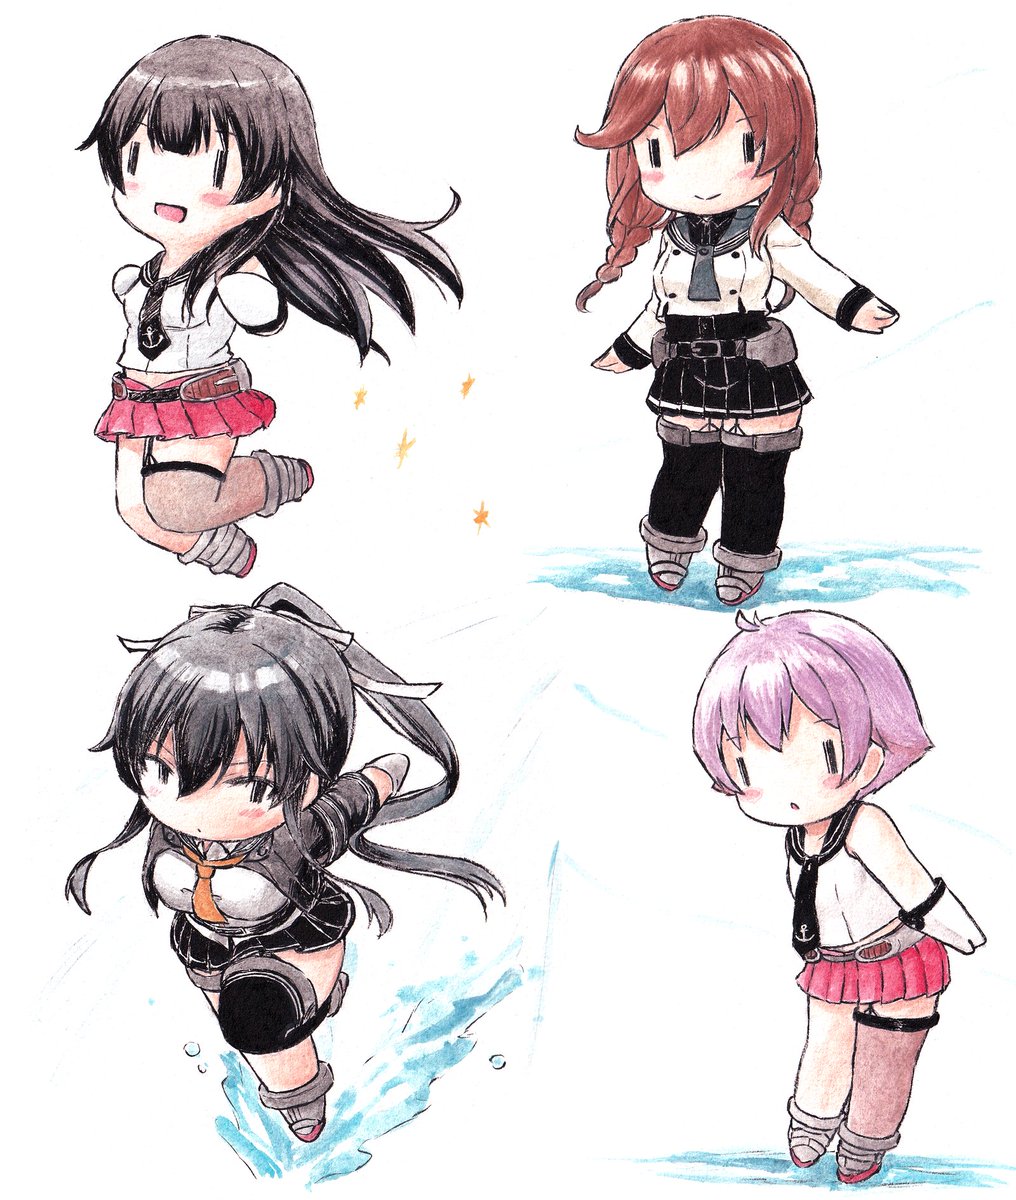 agano (kancolle) ,noshiro (kancolle) ,sakawa (kancolle) ,yahagi (kancolle) 4girls long hair multiple girls black sailor collar skirt black hair twin braids  illustration images